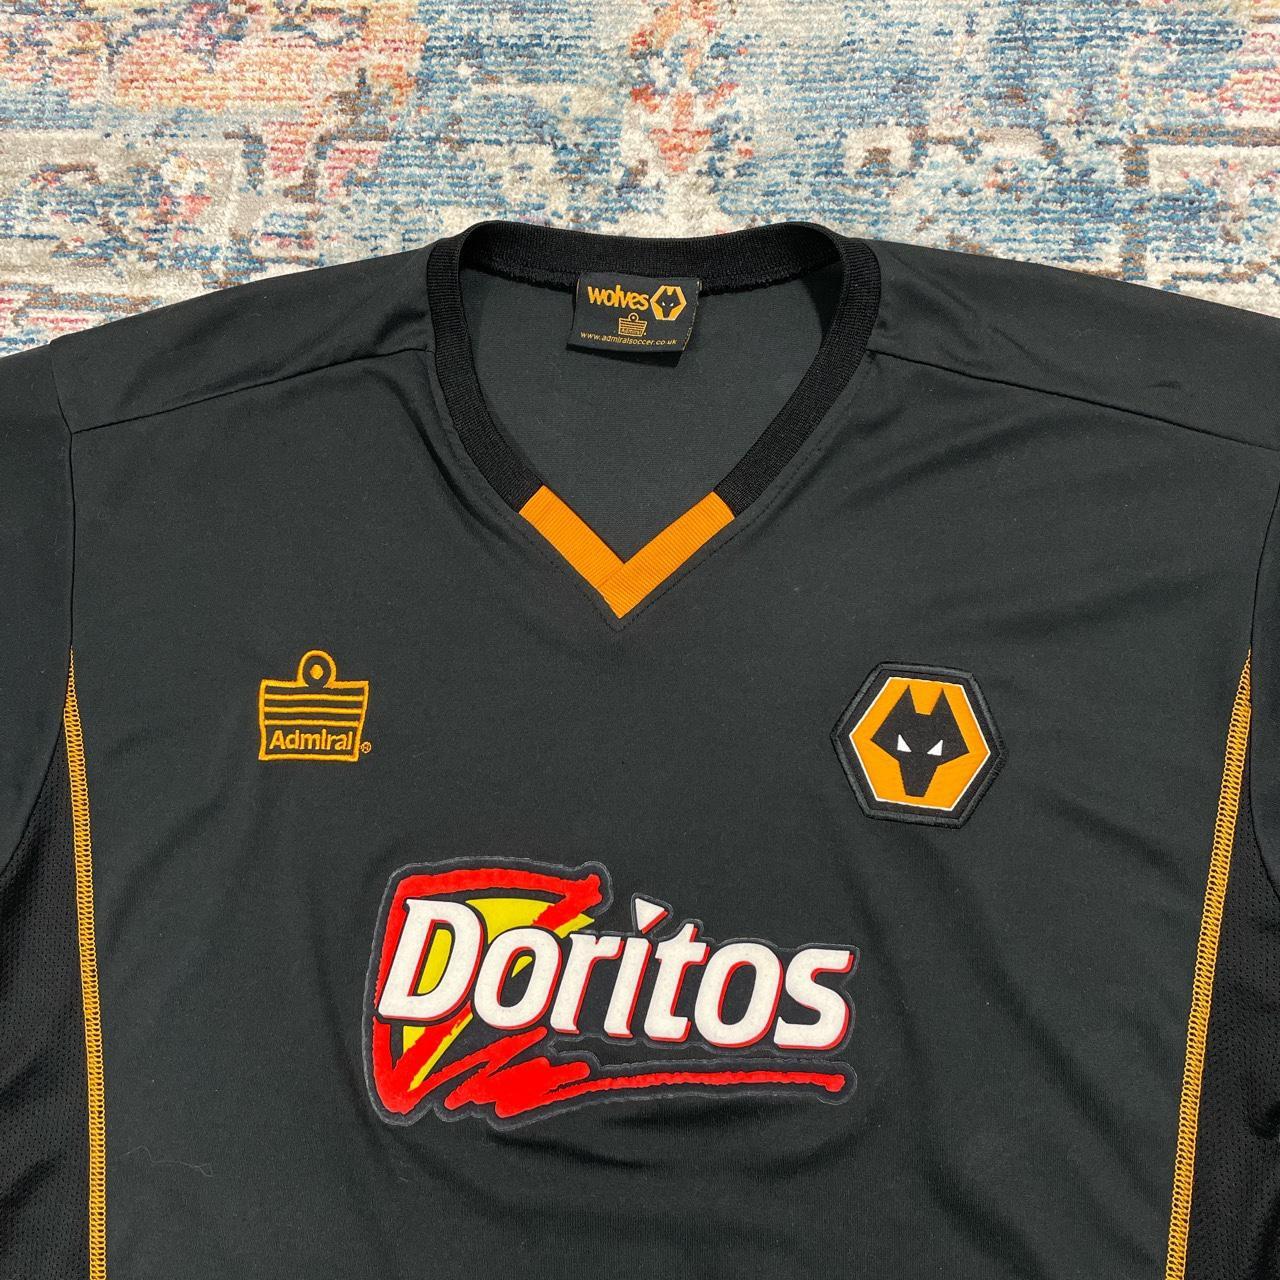 Wolverhampton Wanderers Doritos 2003/04 Away Football Shirt